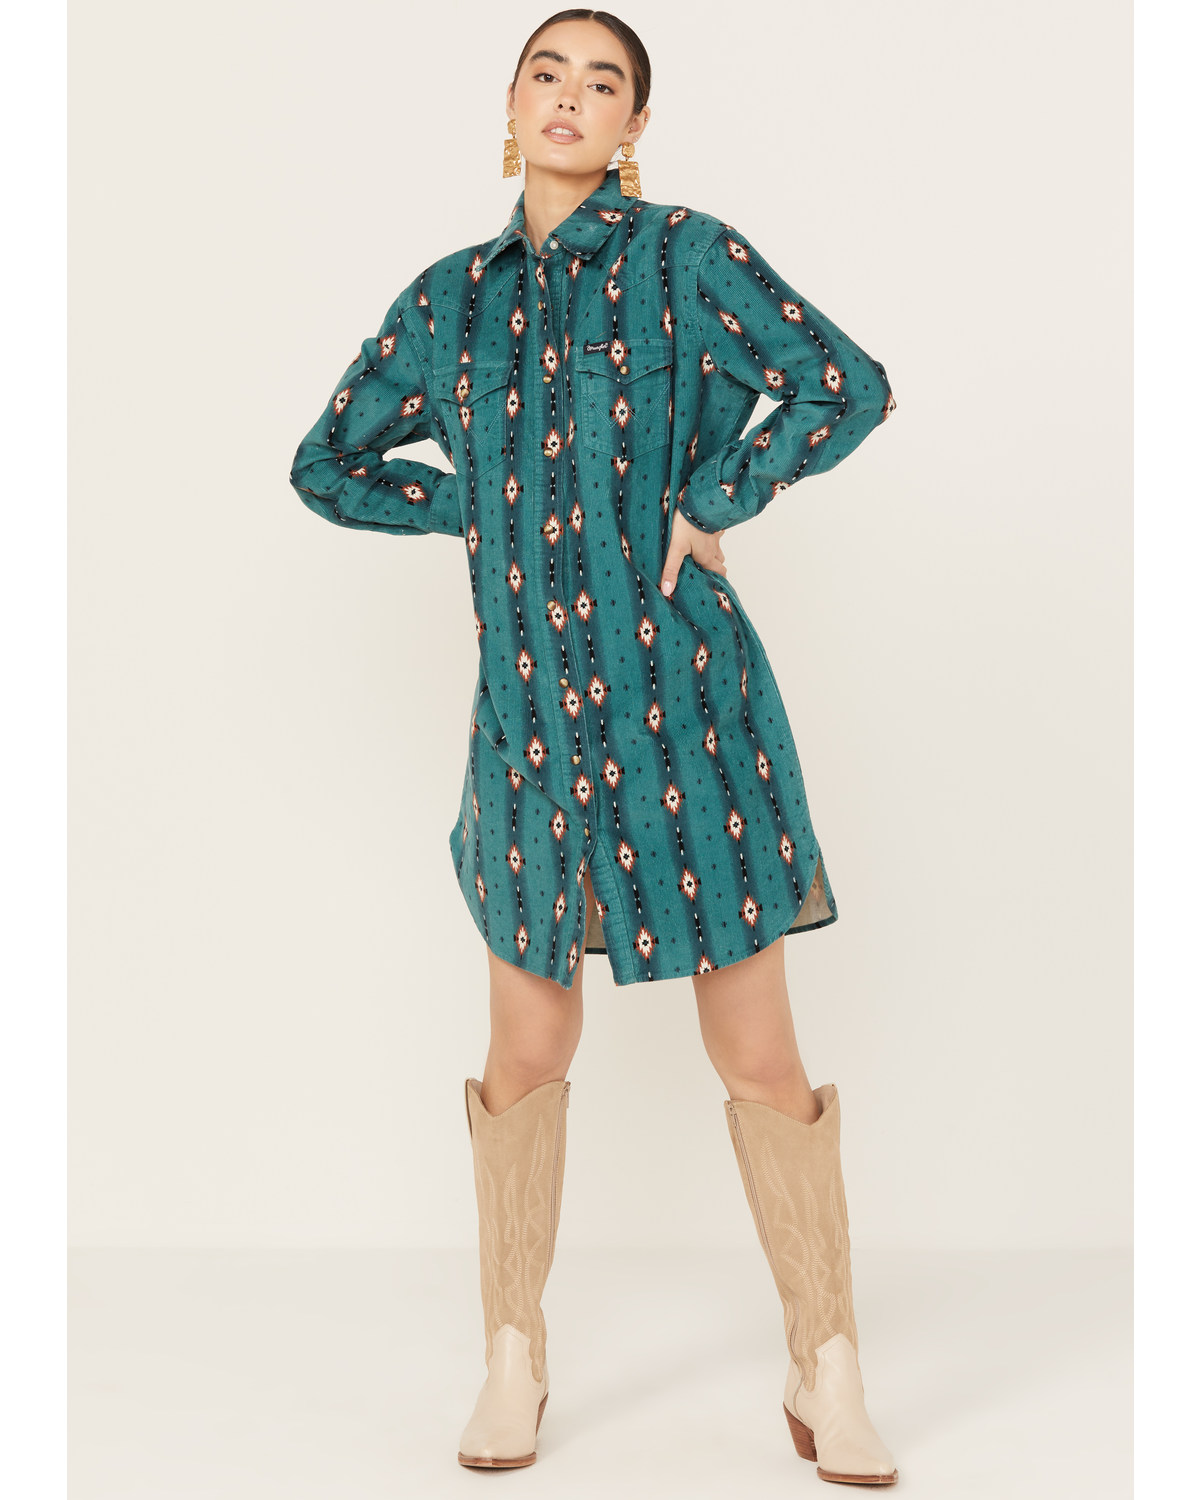 Wrangler Women's Southwestern Print Long Sleeve Mini Dress